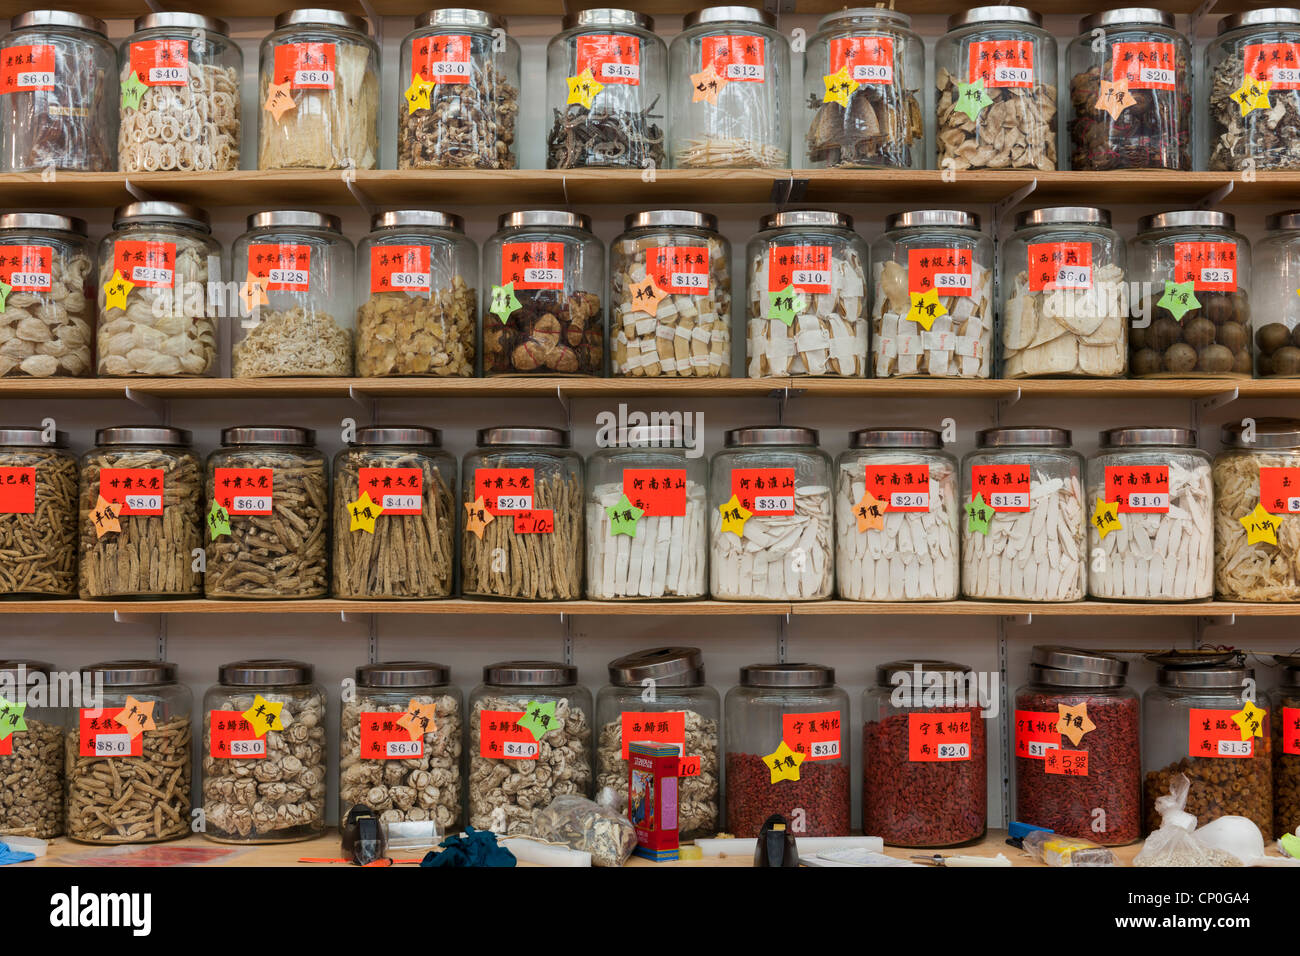 La medicina herbaria china en frascos de vidrio en los estantes Foto de stock